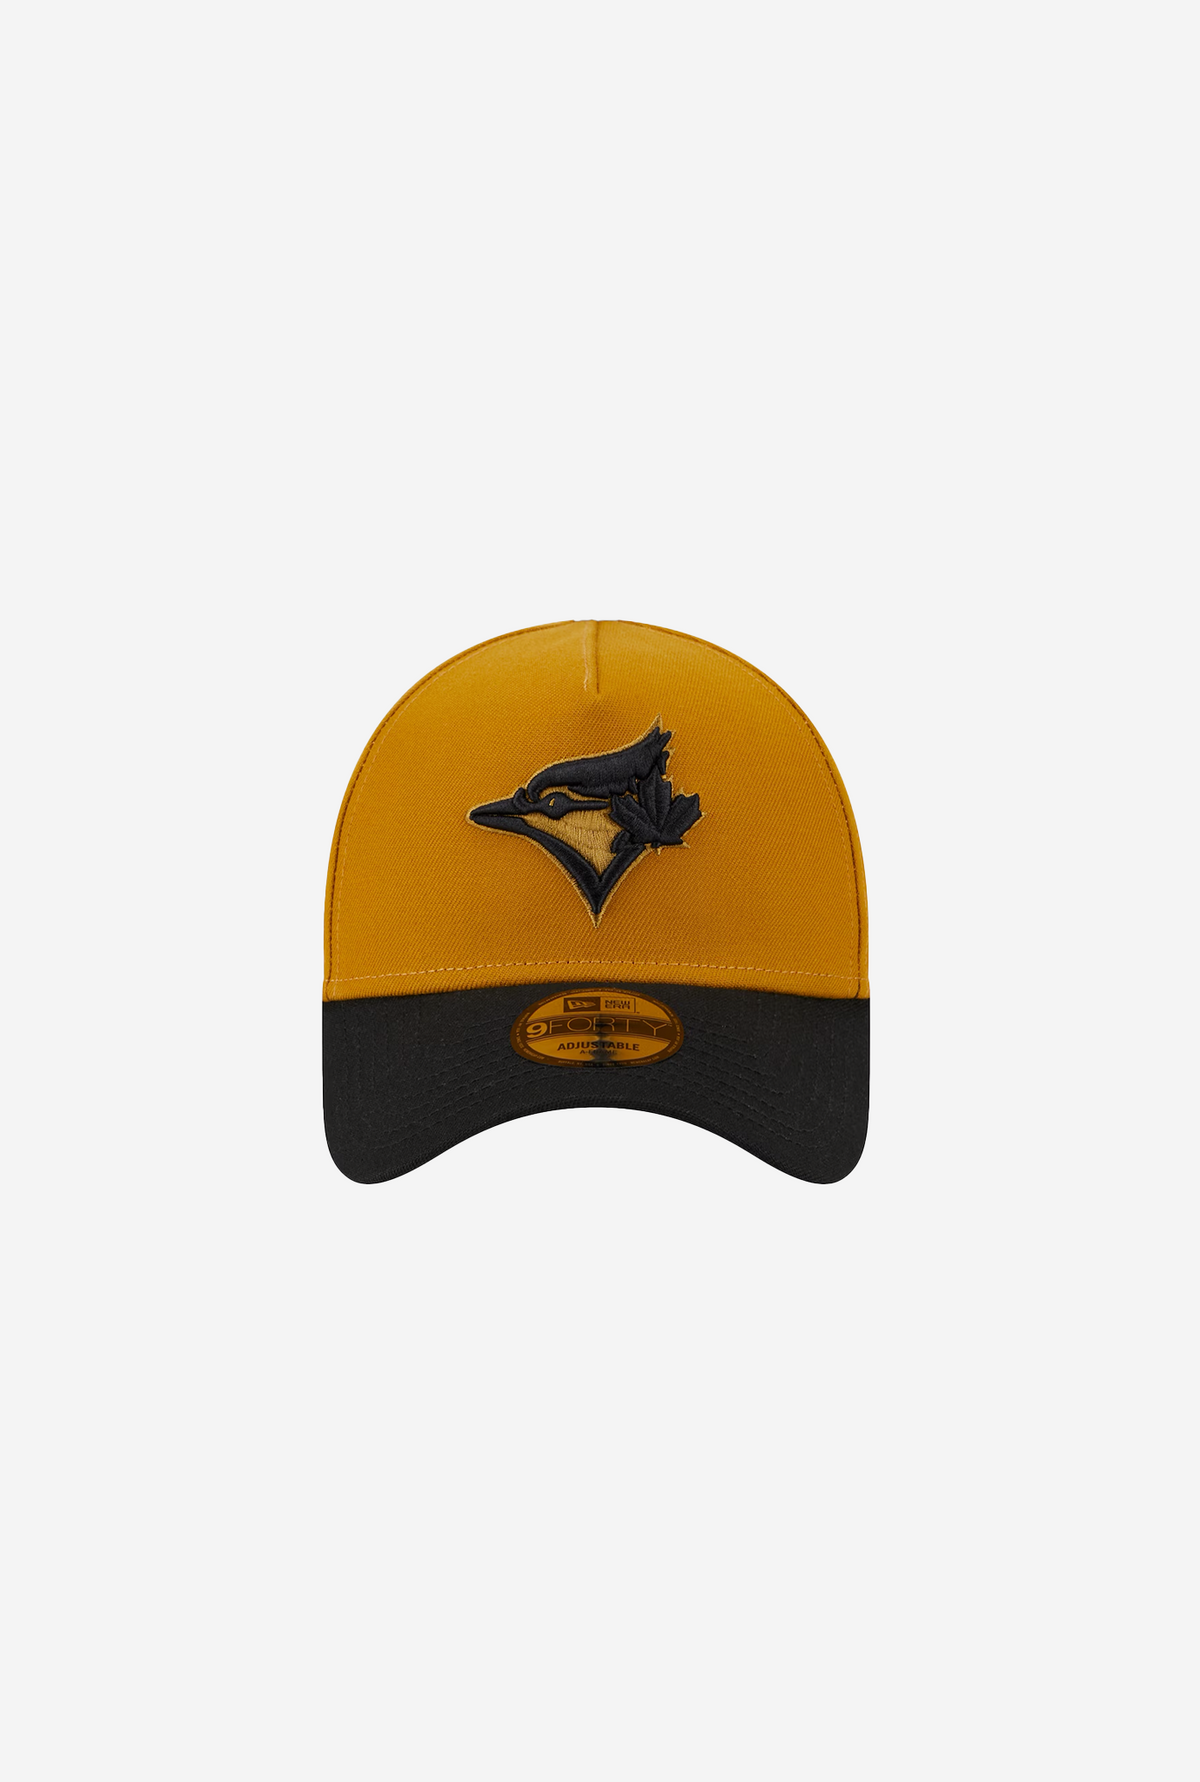 Toronto Blue Jays 9FORTY A-Frame Hat -  Black/Gold